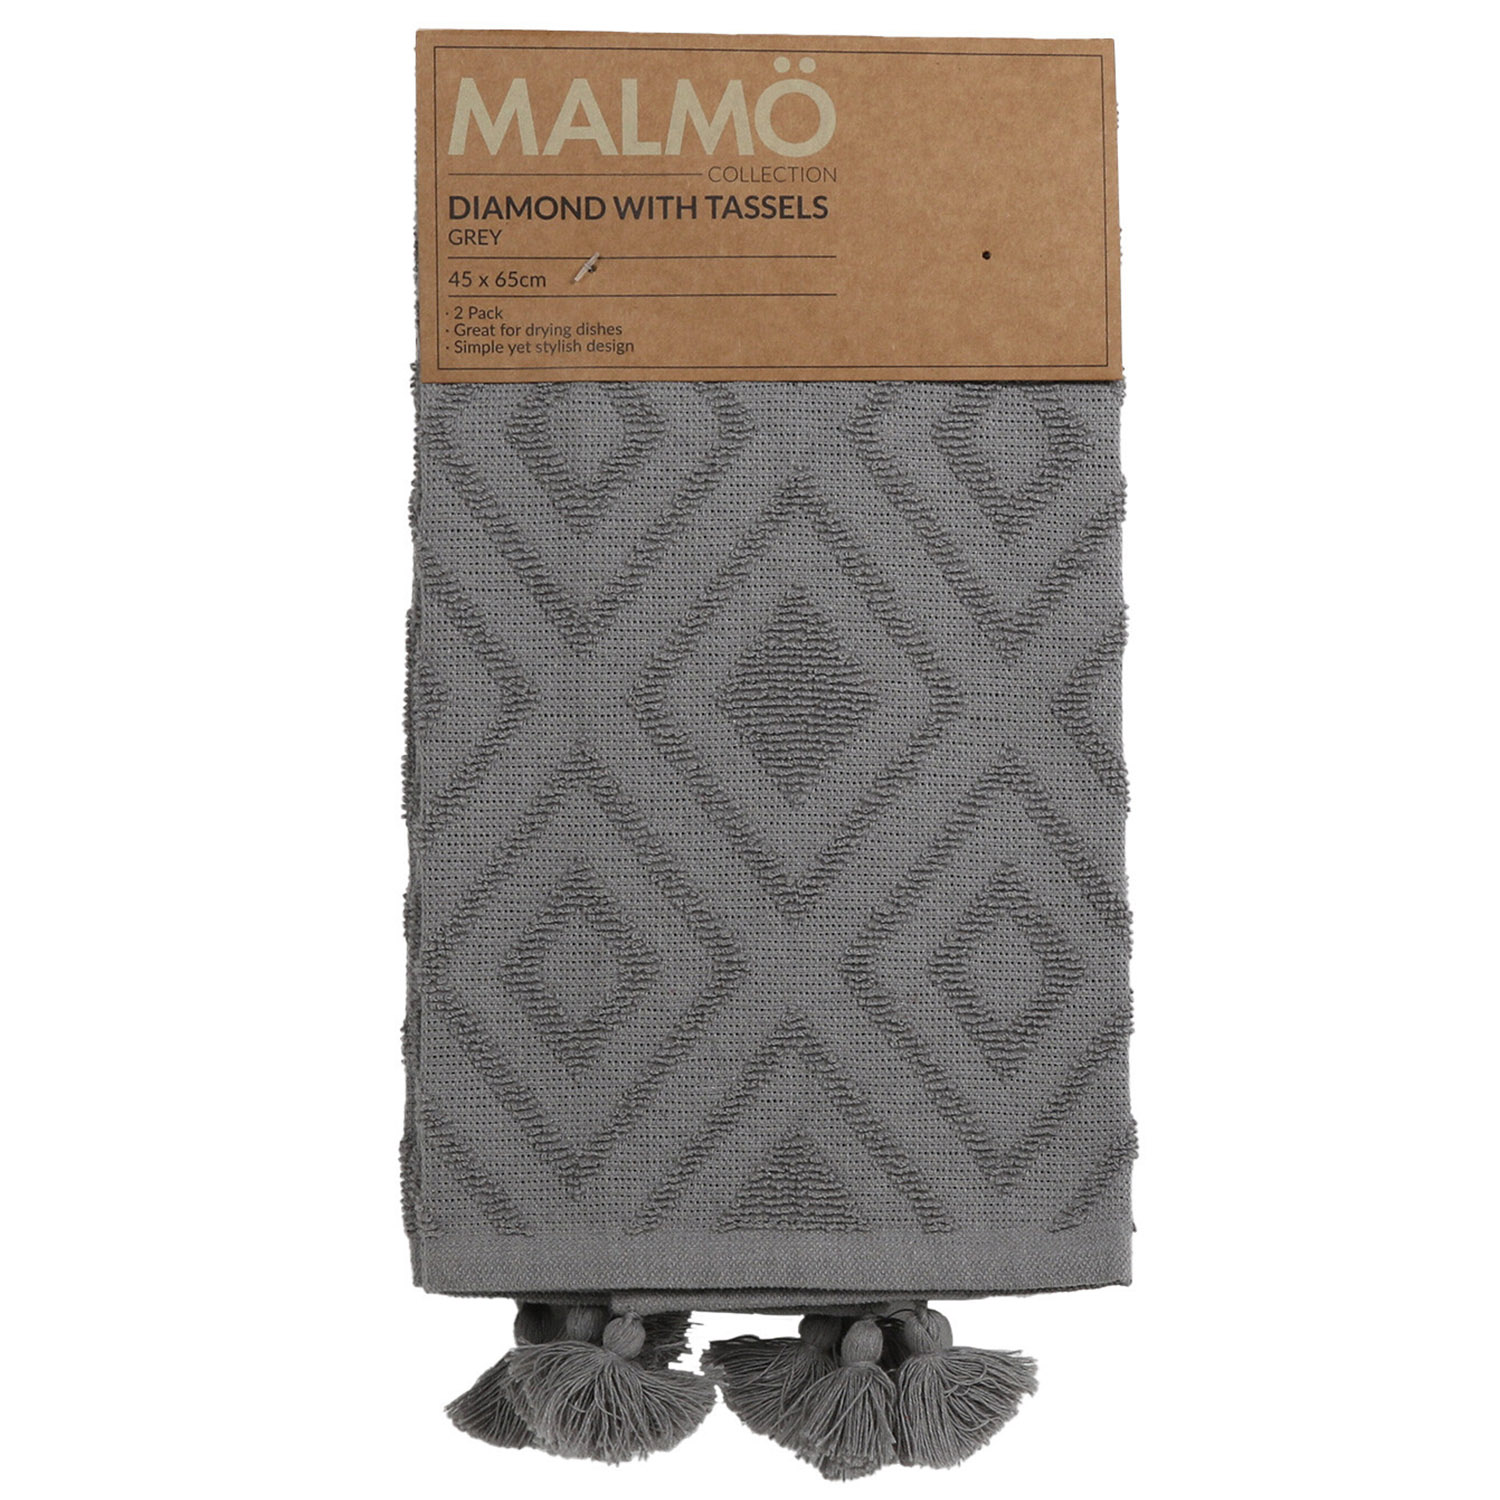 Malmo Grey Diamond Tassel Tea Towels 2 Pack Image